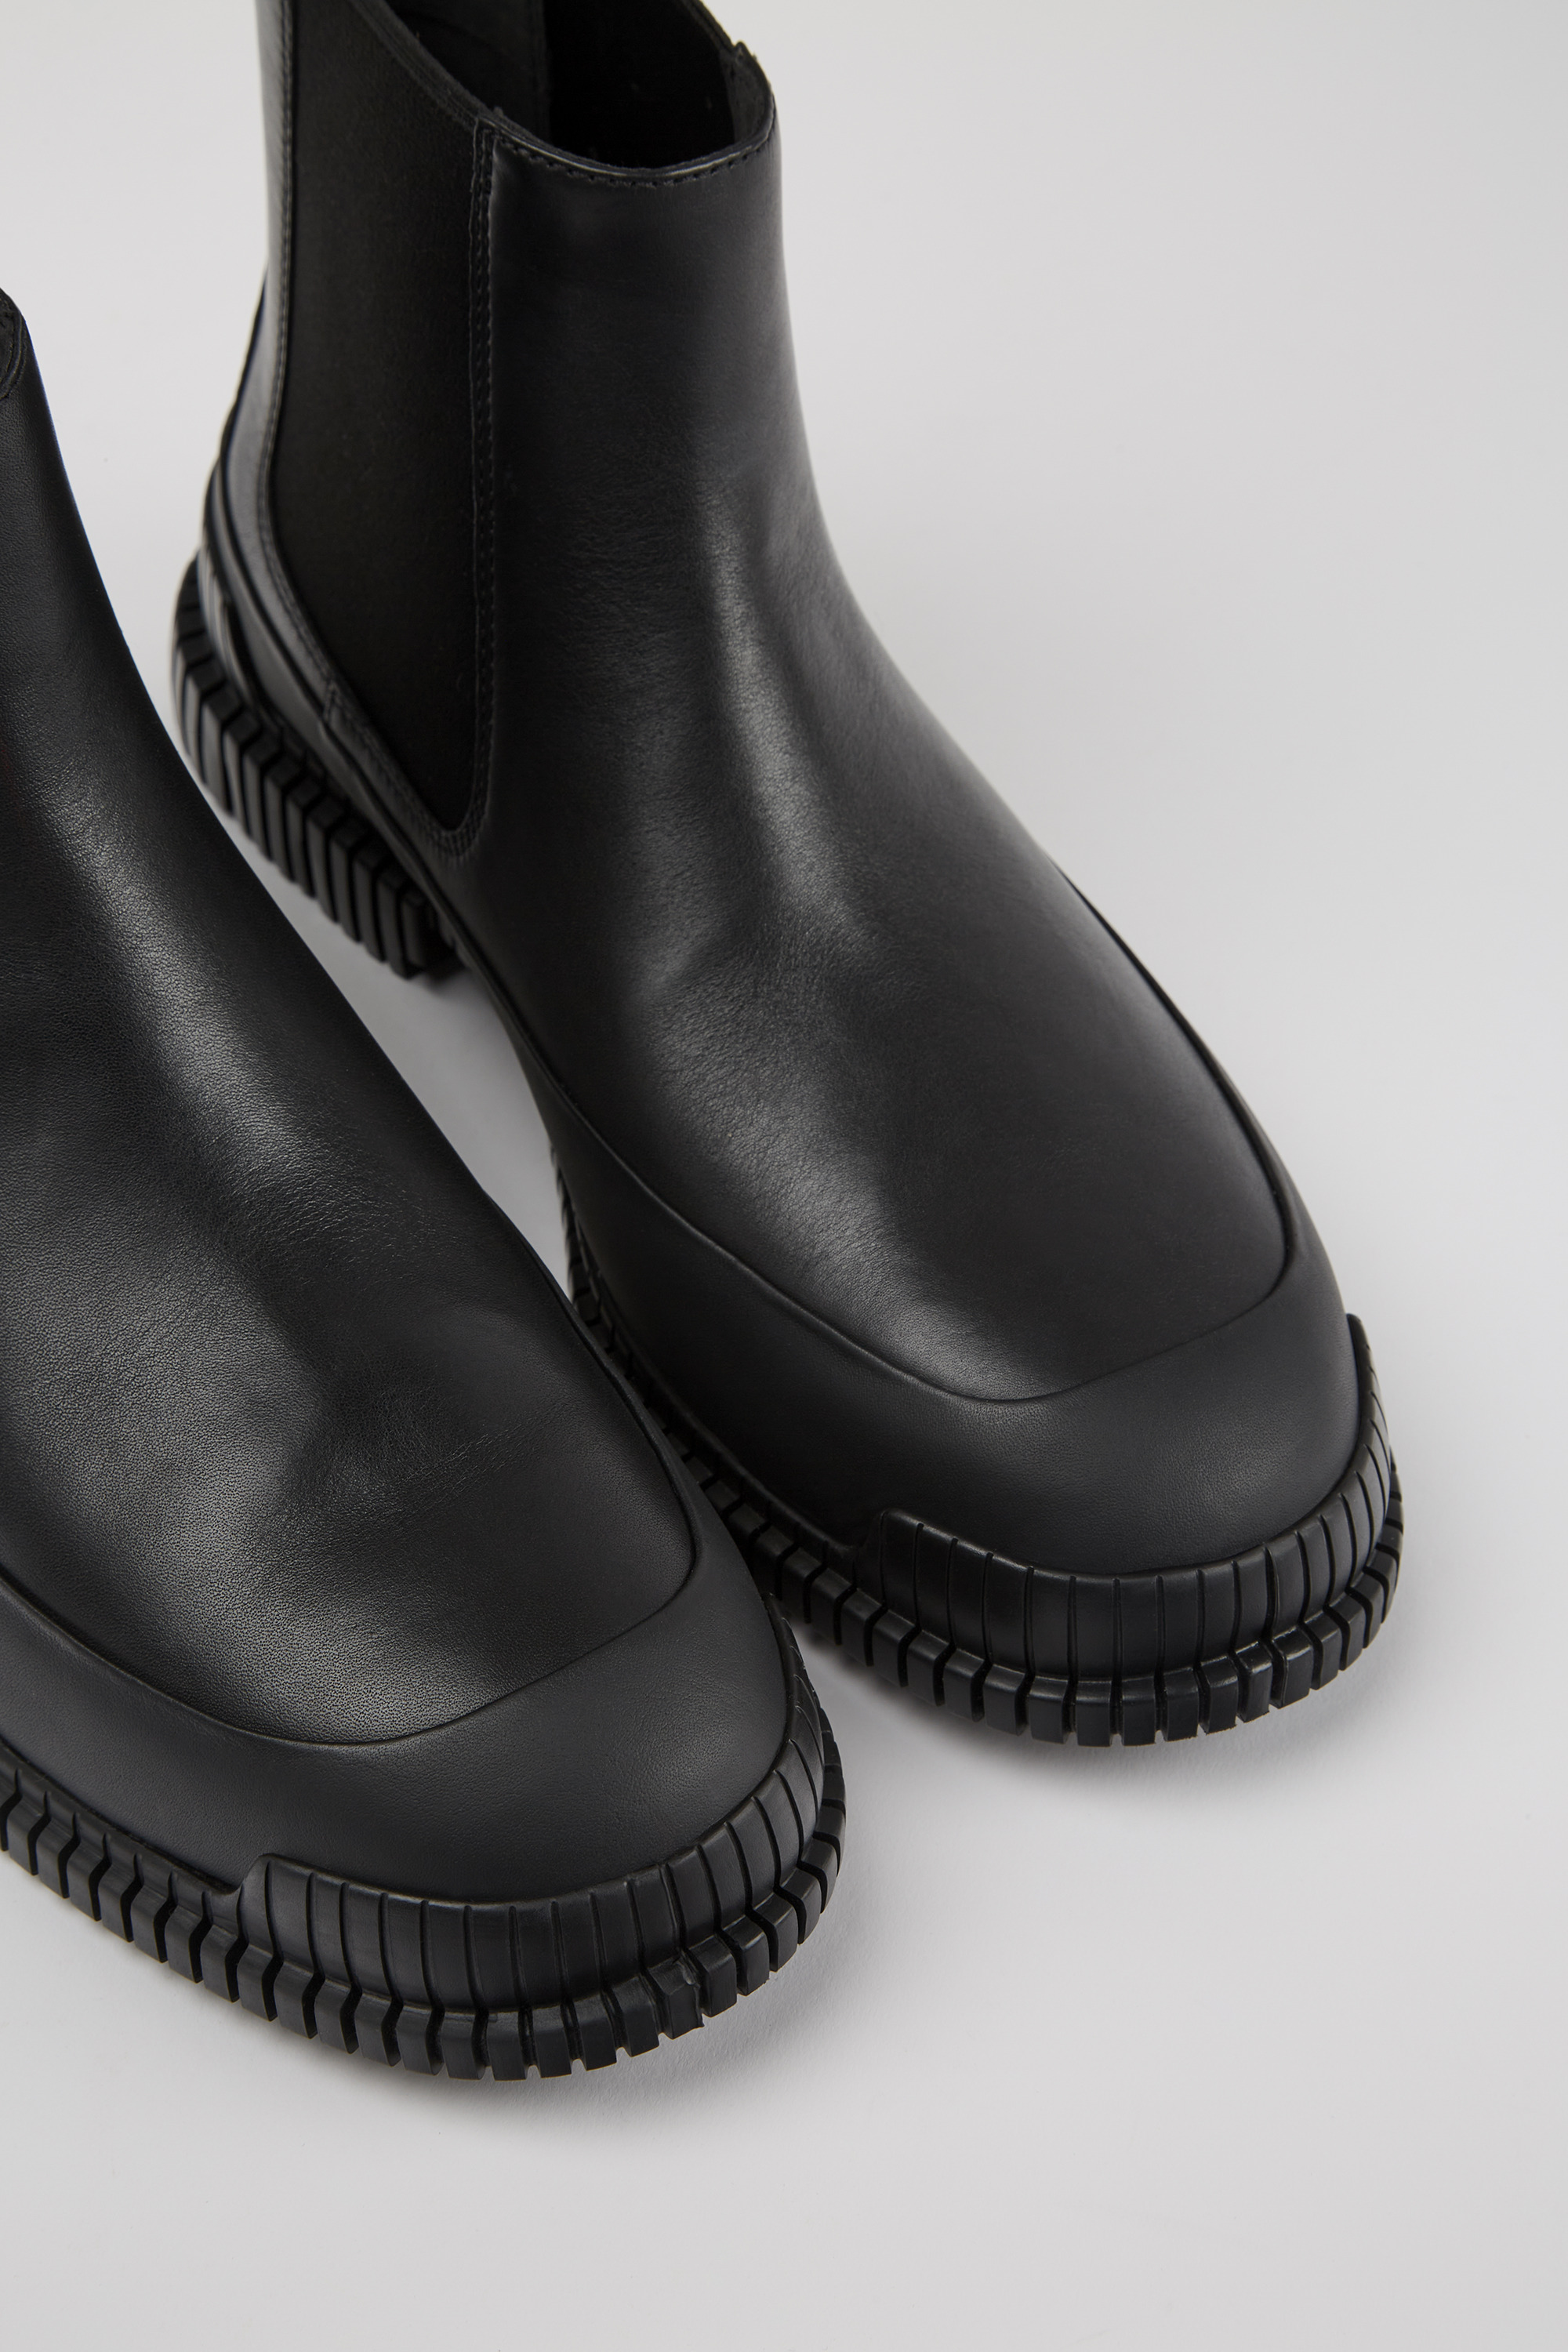 foran generøsitet Være Pix Black Ankle Boots for Men - Autumn/Winter collection - Camper USA